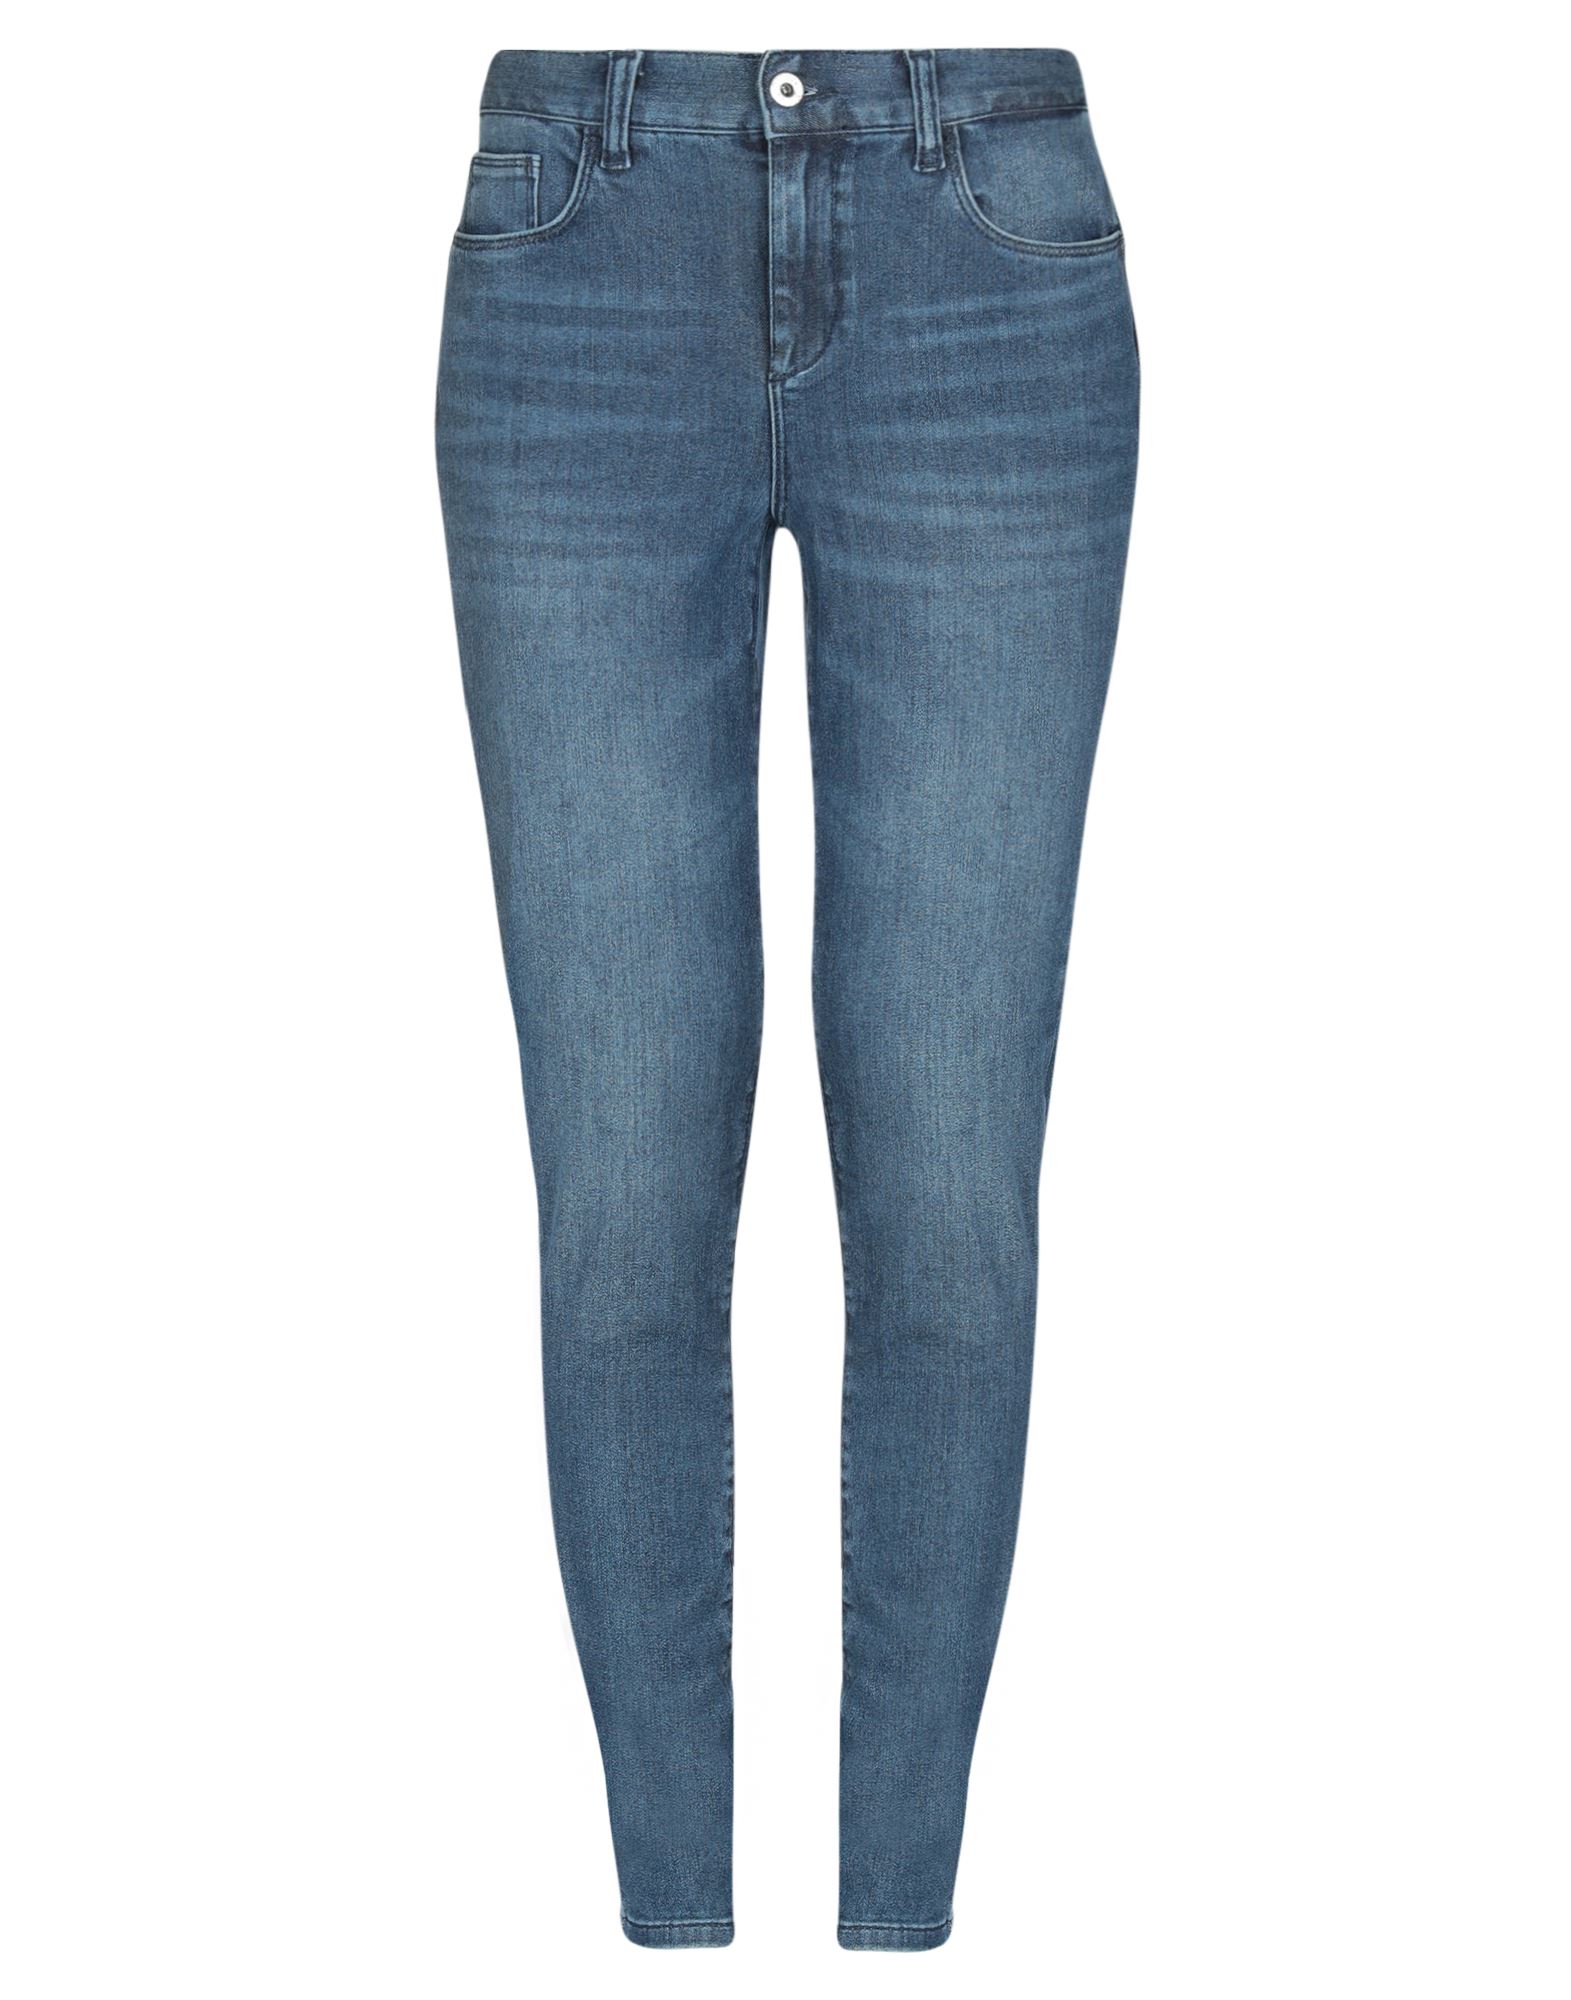 Shop Liu •jo Woman Jeans Blue Size 25w-30l Lyocell, Cotton, Elastomultiester, Elastane